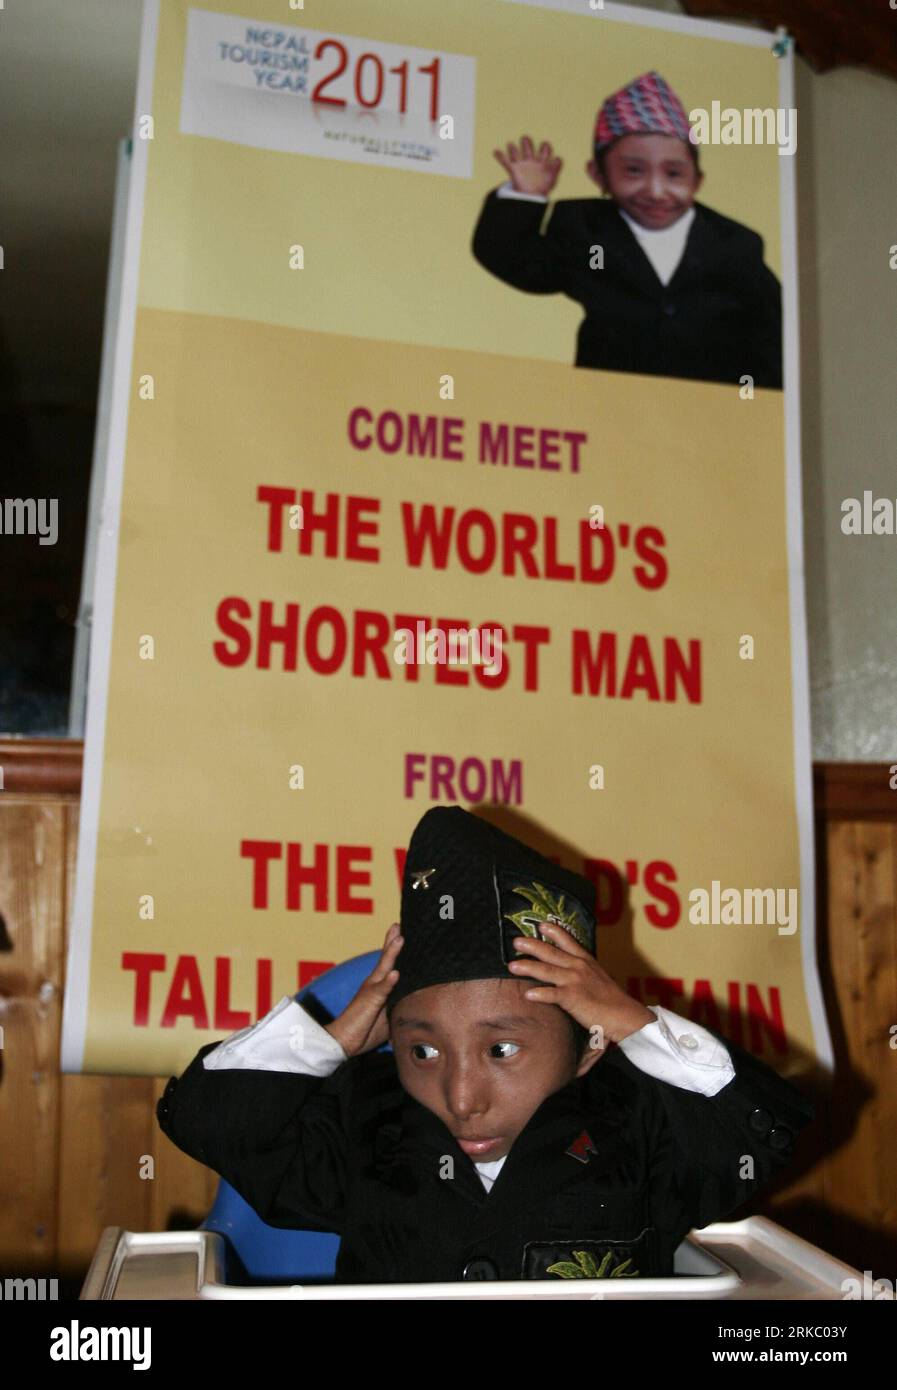 101112 -- LONDRA, 12 novembre 2010 Xinhua -- l'uomo più corto del mondo nepalese Khagendra Thapamagar partecipa a una promozione del turismo nepalese a Londra, capitale della Gran Bretagna, 11 novembre 2010. Alto 67,08 cm e peso di 5,5 kg, Khagendra Thapamagar di 18 anni è stato confermato dal Guiness World Records come l'uomo adulto più corto del mondo quest'anno. Xinhua/Bimal Gautam BRITAIN-LONDON-L'UOMO PIÙ CORTO DEL MONDO PUBLICATIONxNOTxINxCHN Foto Stock